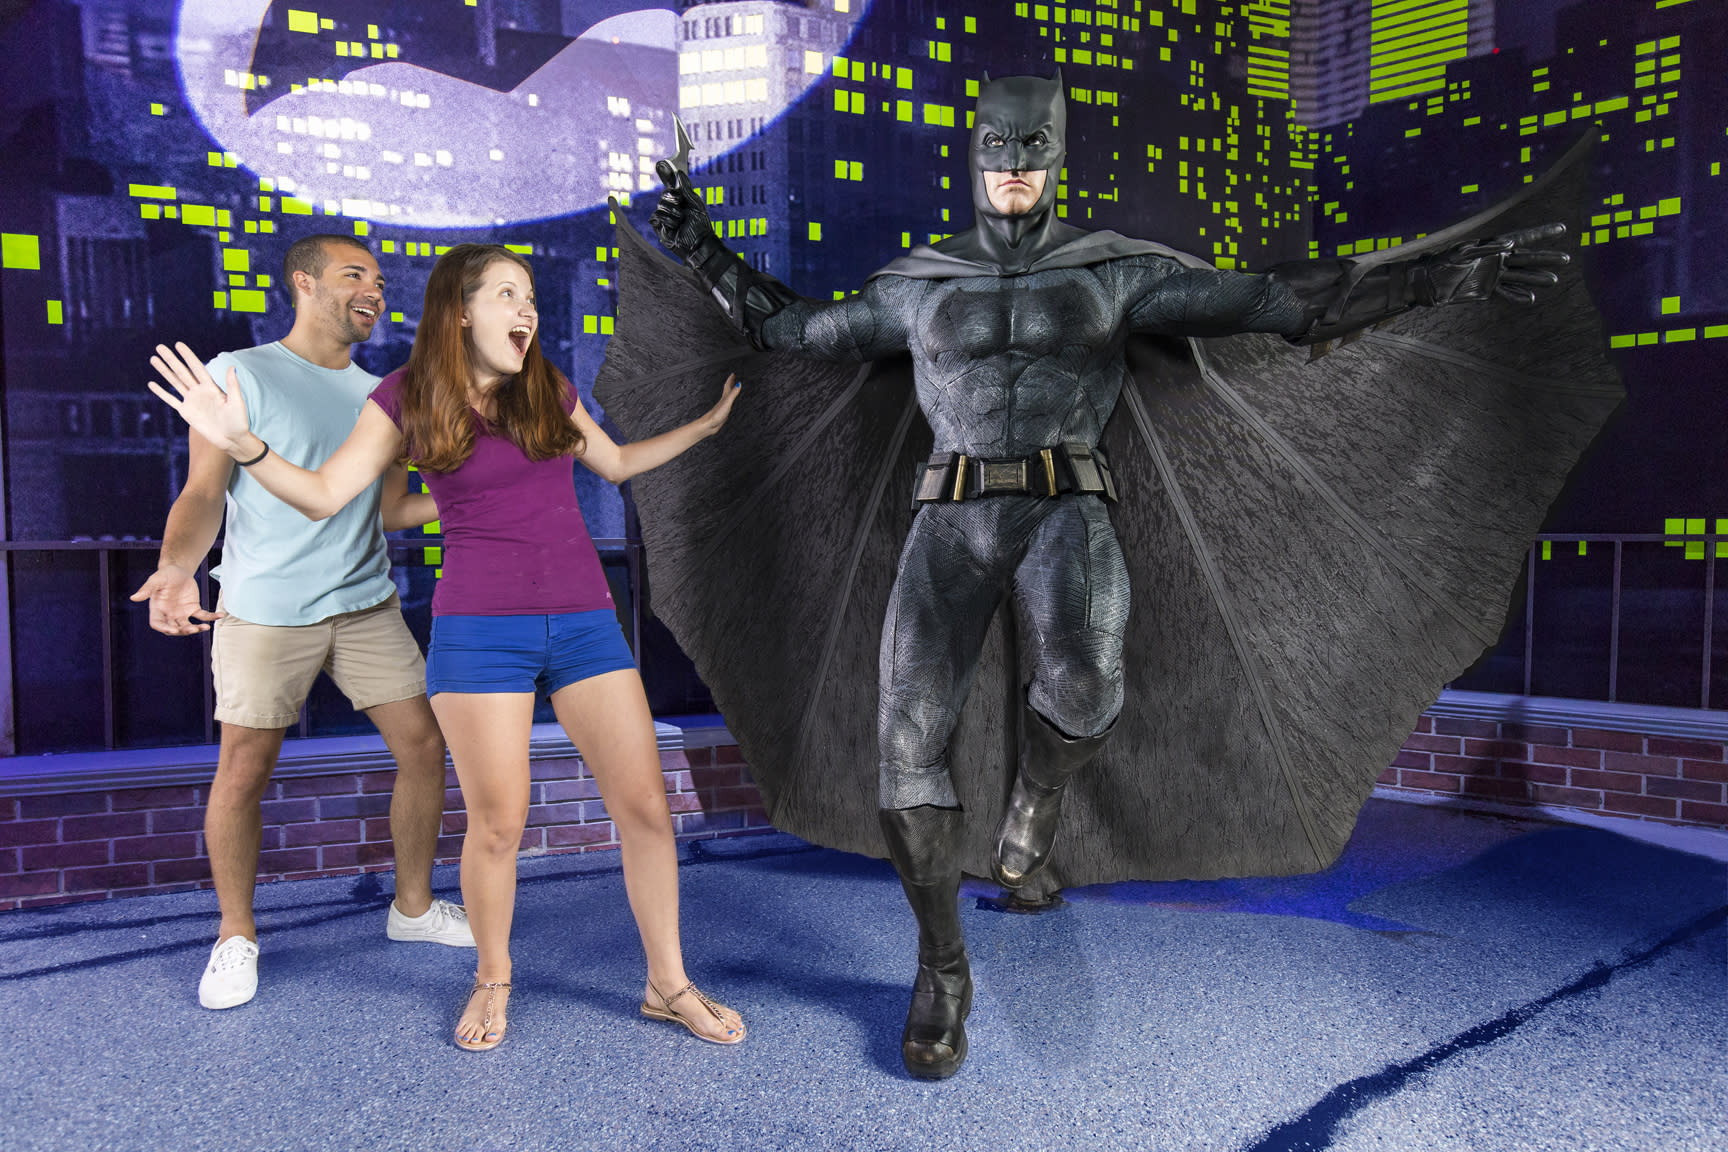 Ben Affleck as Batman at Madame Tussauds Orlando